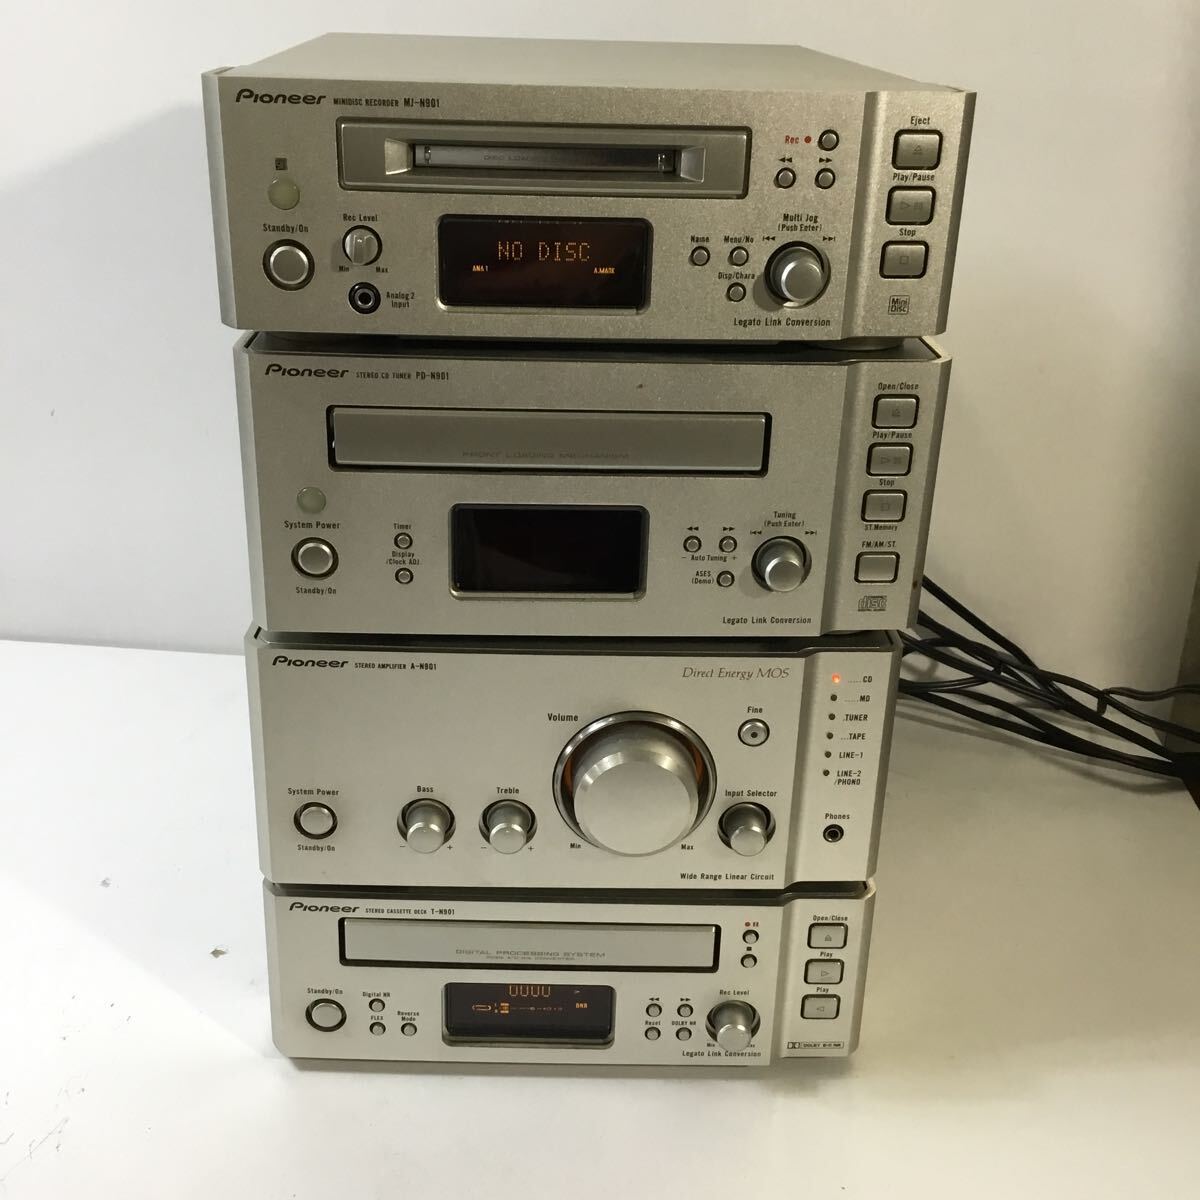 Pioneer звуковая аппаратура 6 позиций комплект динамик S-N901-LR усилитель Pioneer электризация подтверждено работоспособность не проверялась A-N901 Junk текущее состояние товар TS5Z